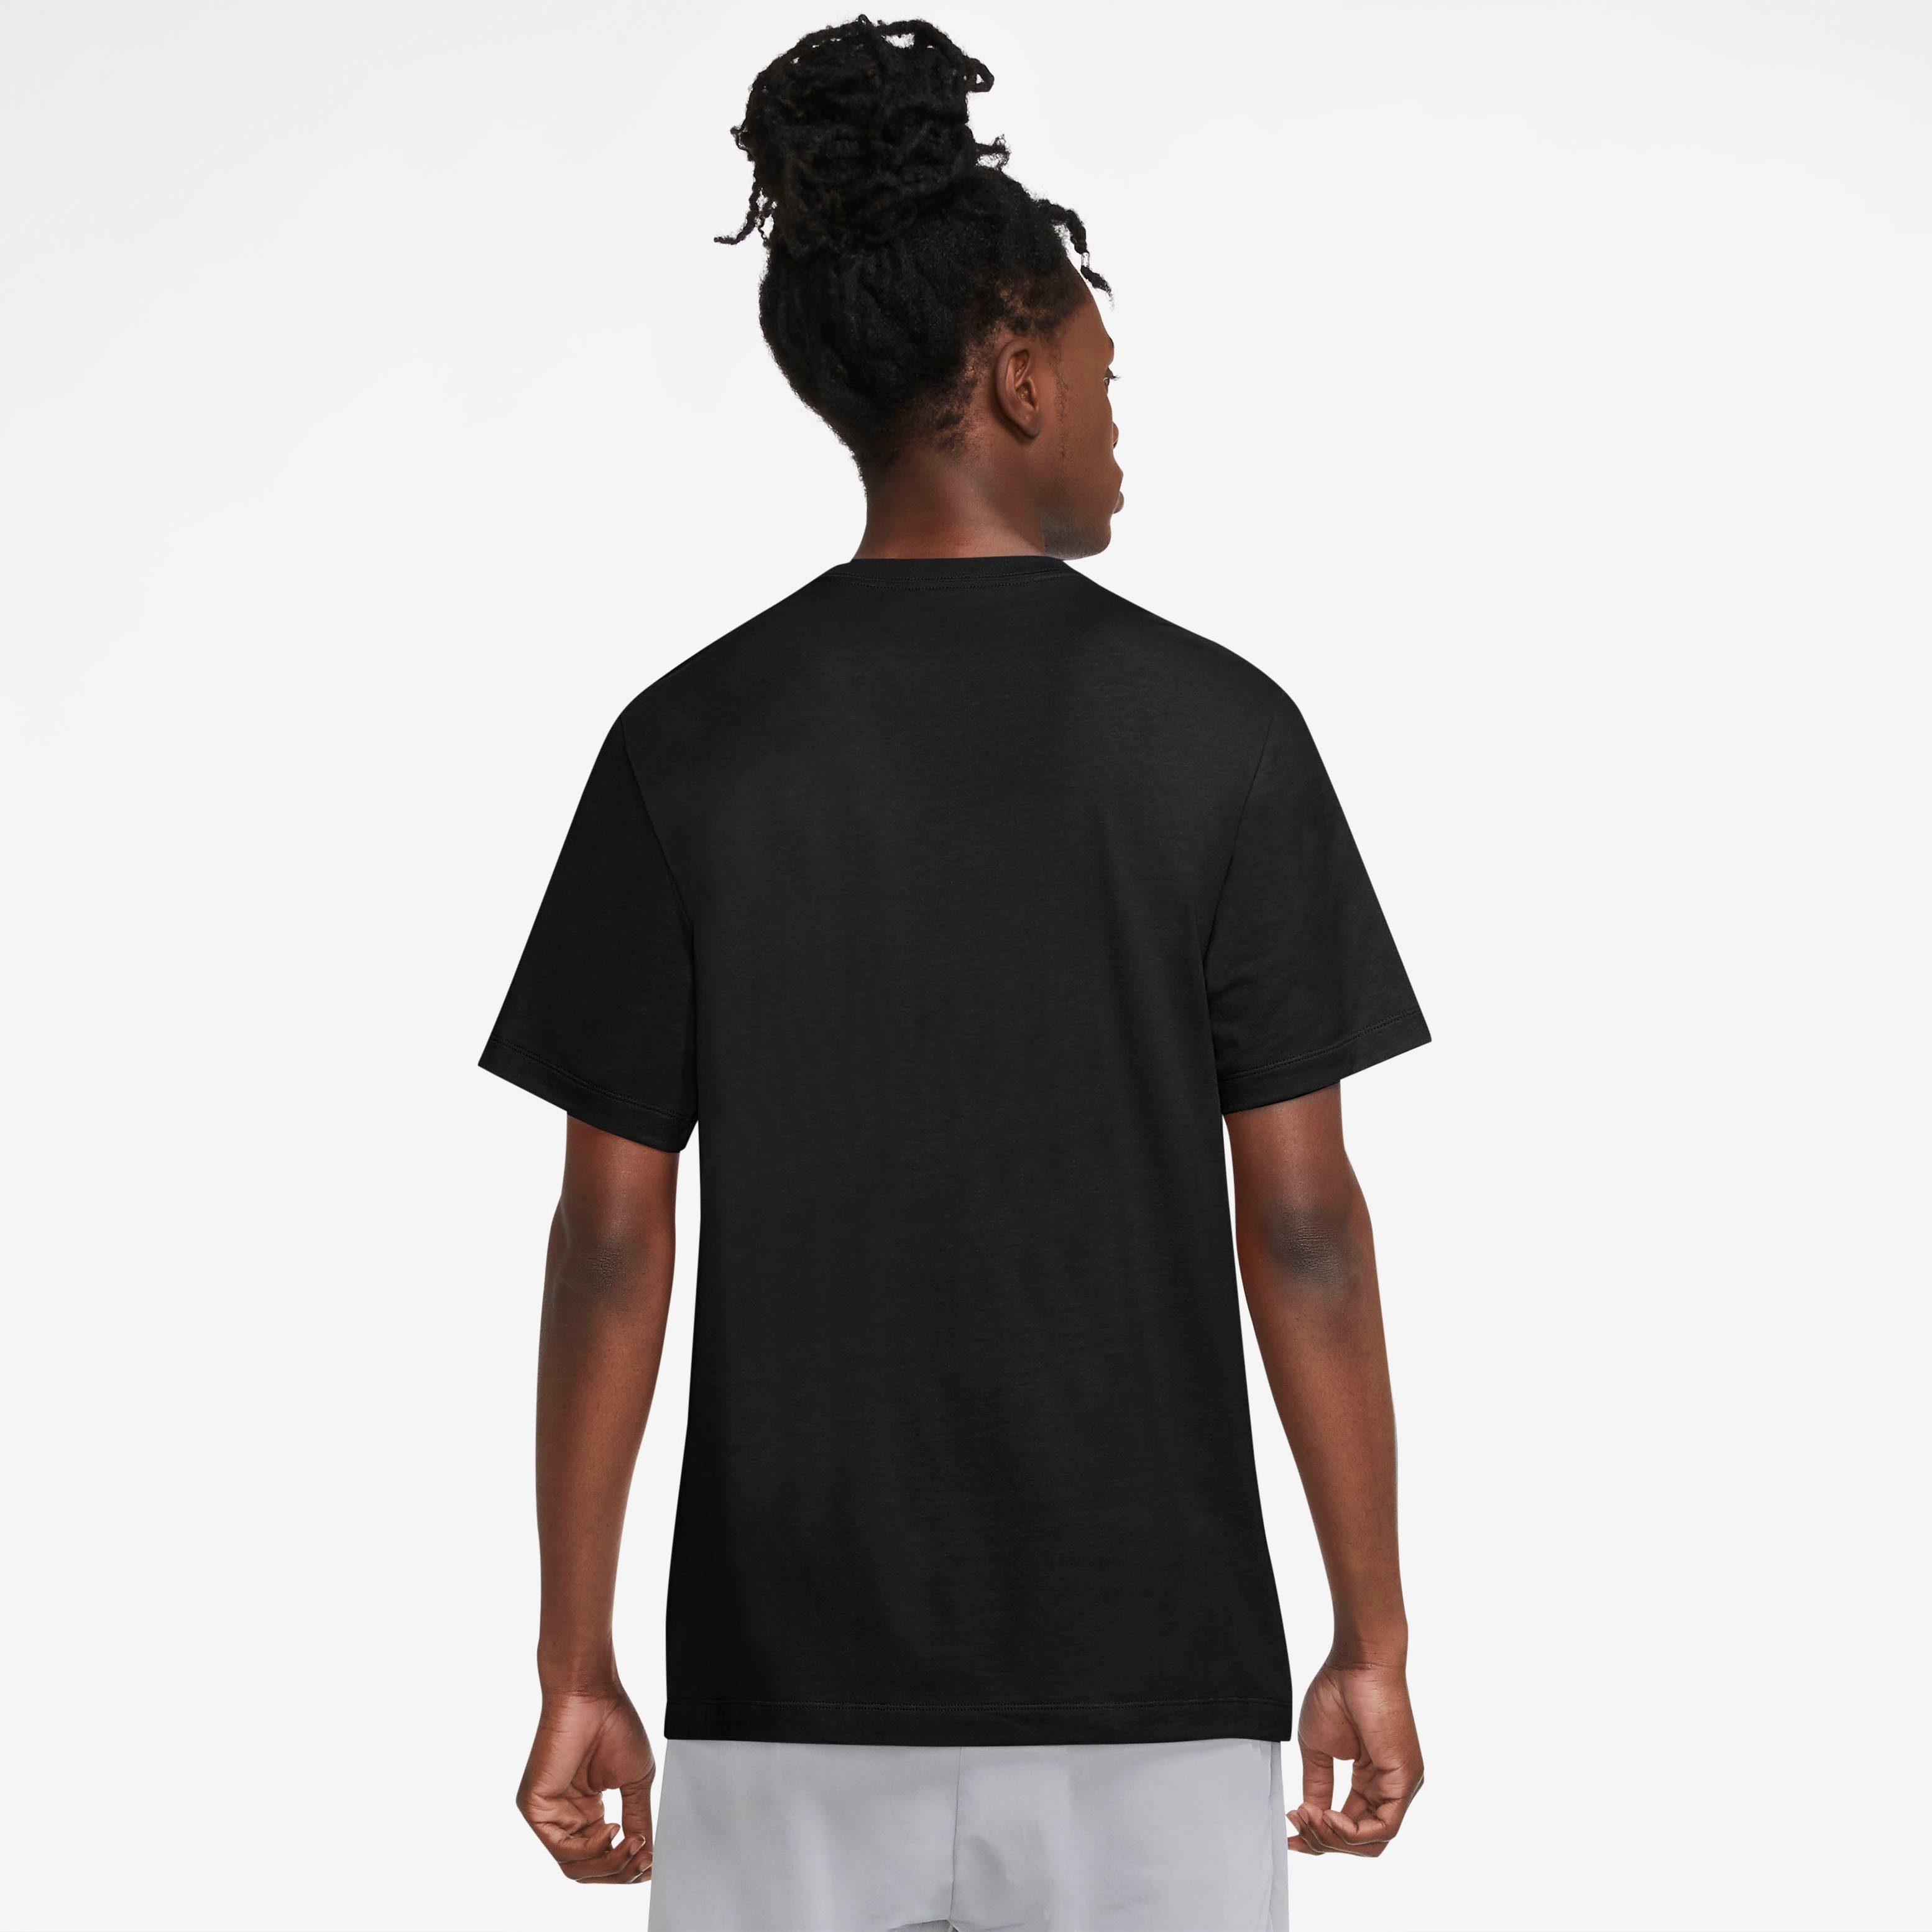 T-Shirt Sportswear MEN'S SWOOSH Nike T-SHIRT schwarz